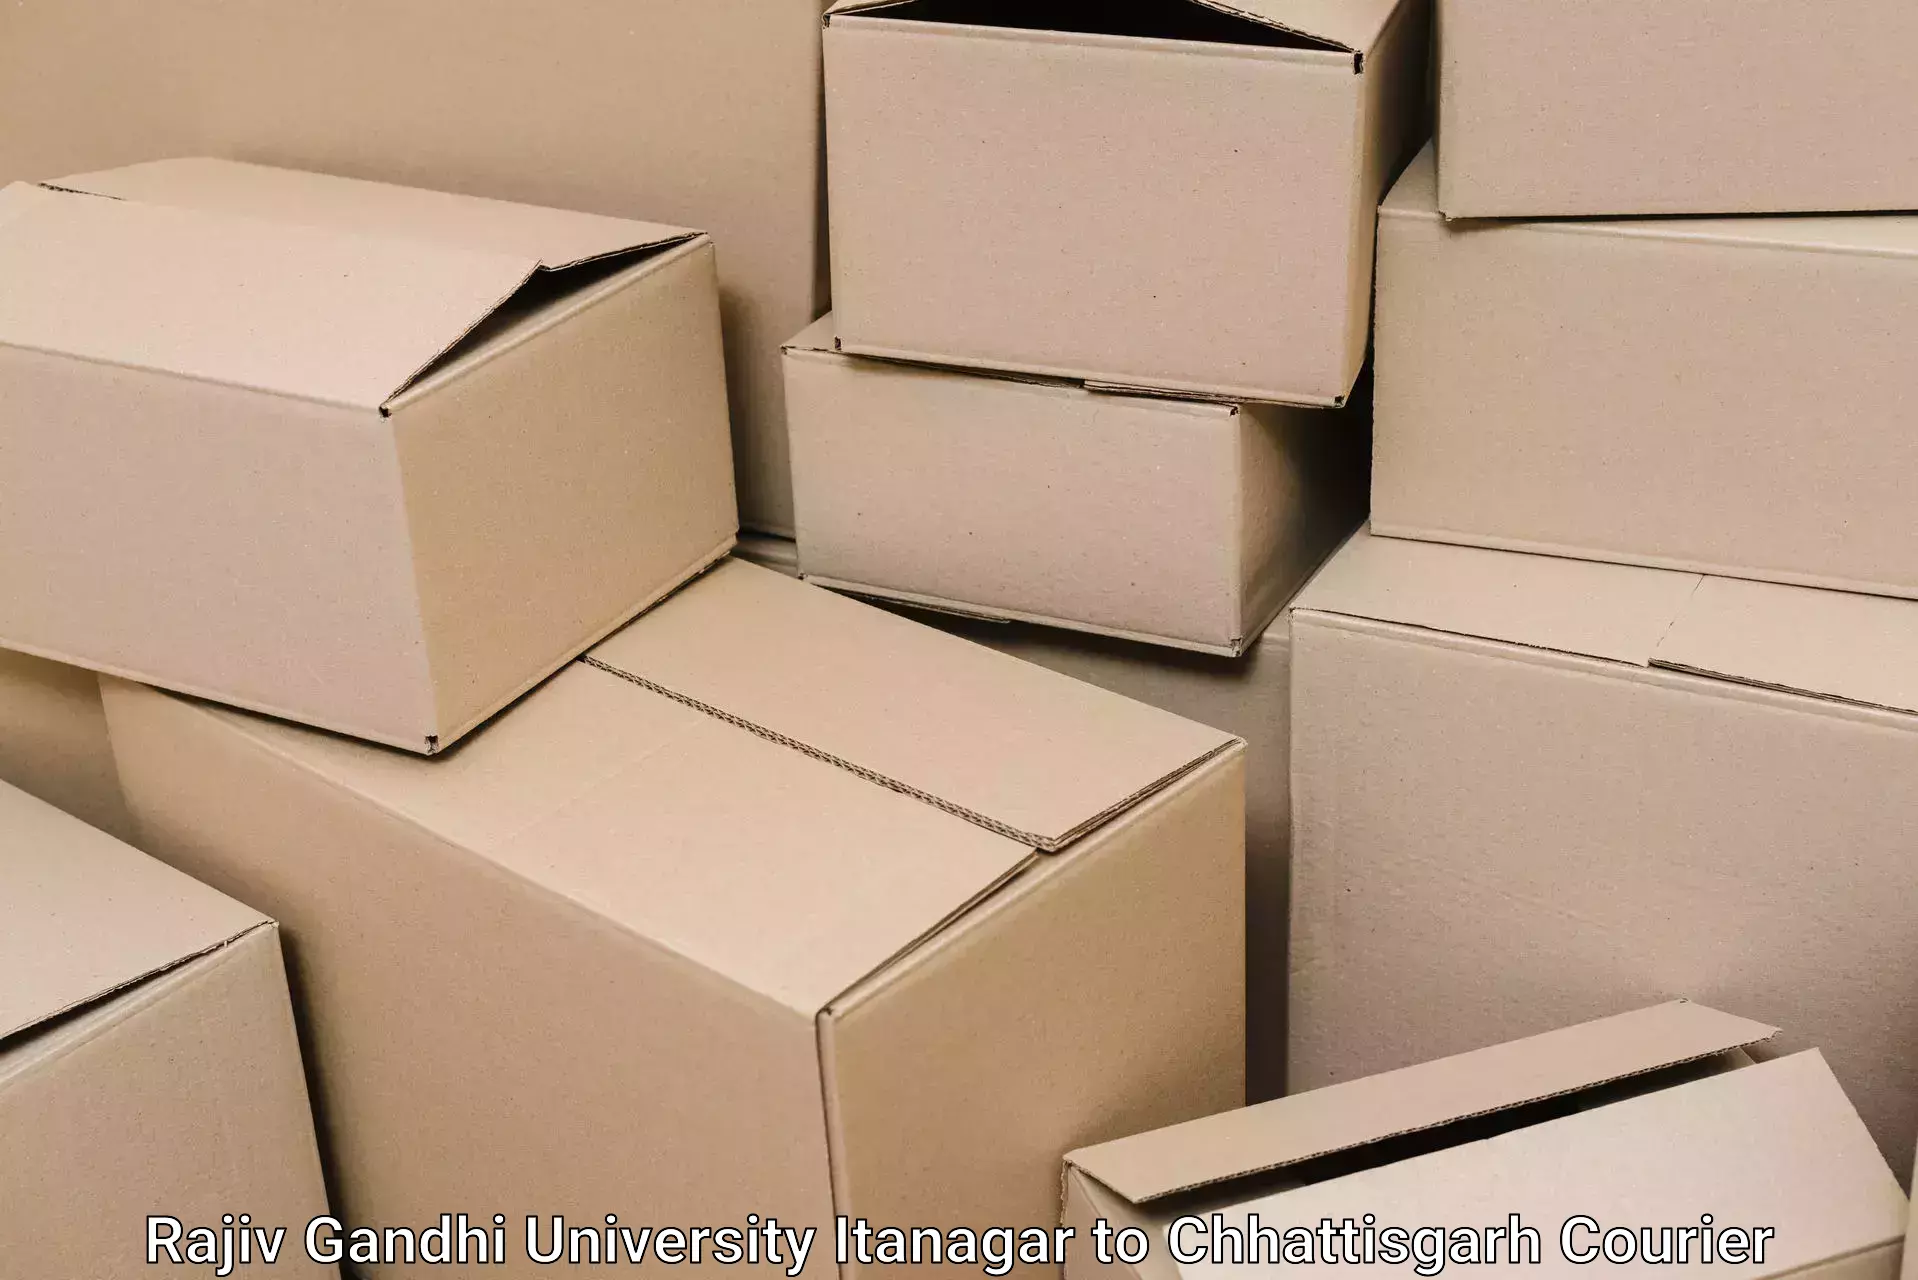 Residential moving experts Rajiv Gandhi University Itanagar to Ambikapur